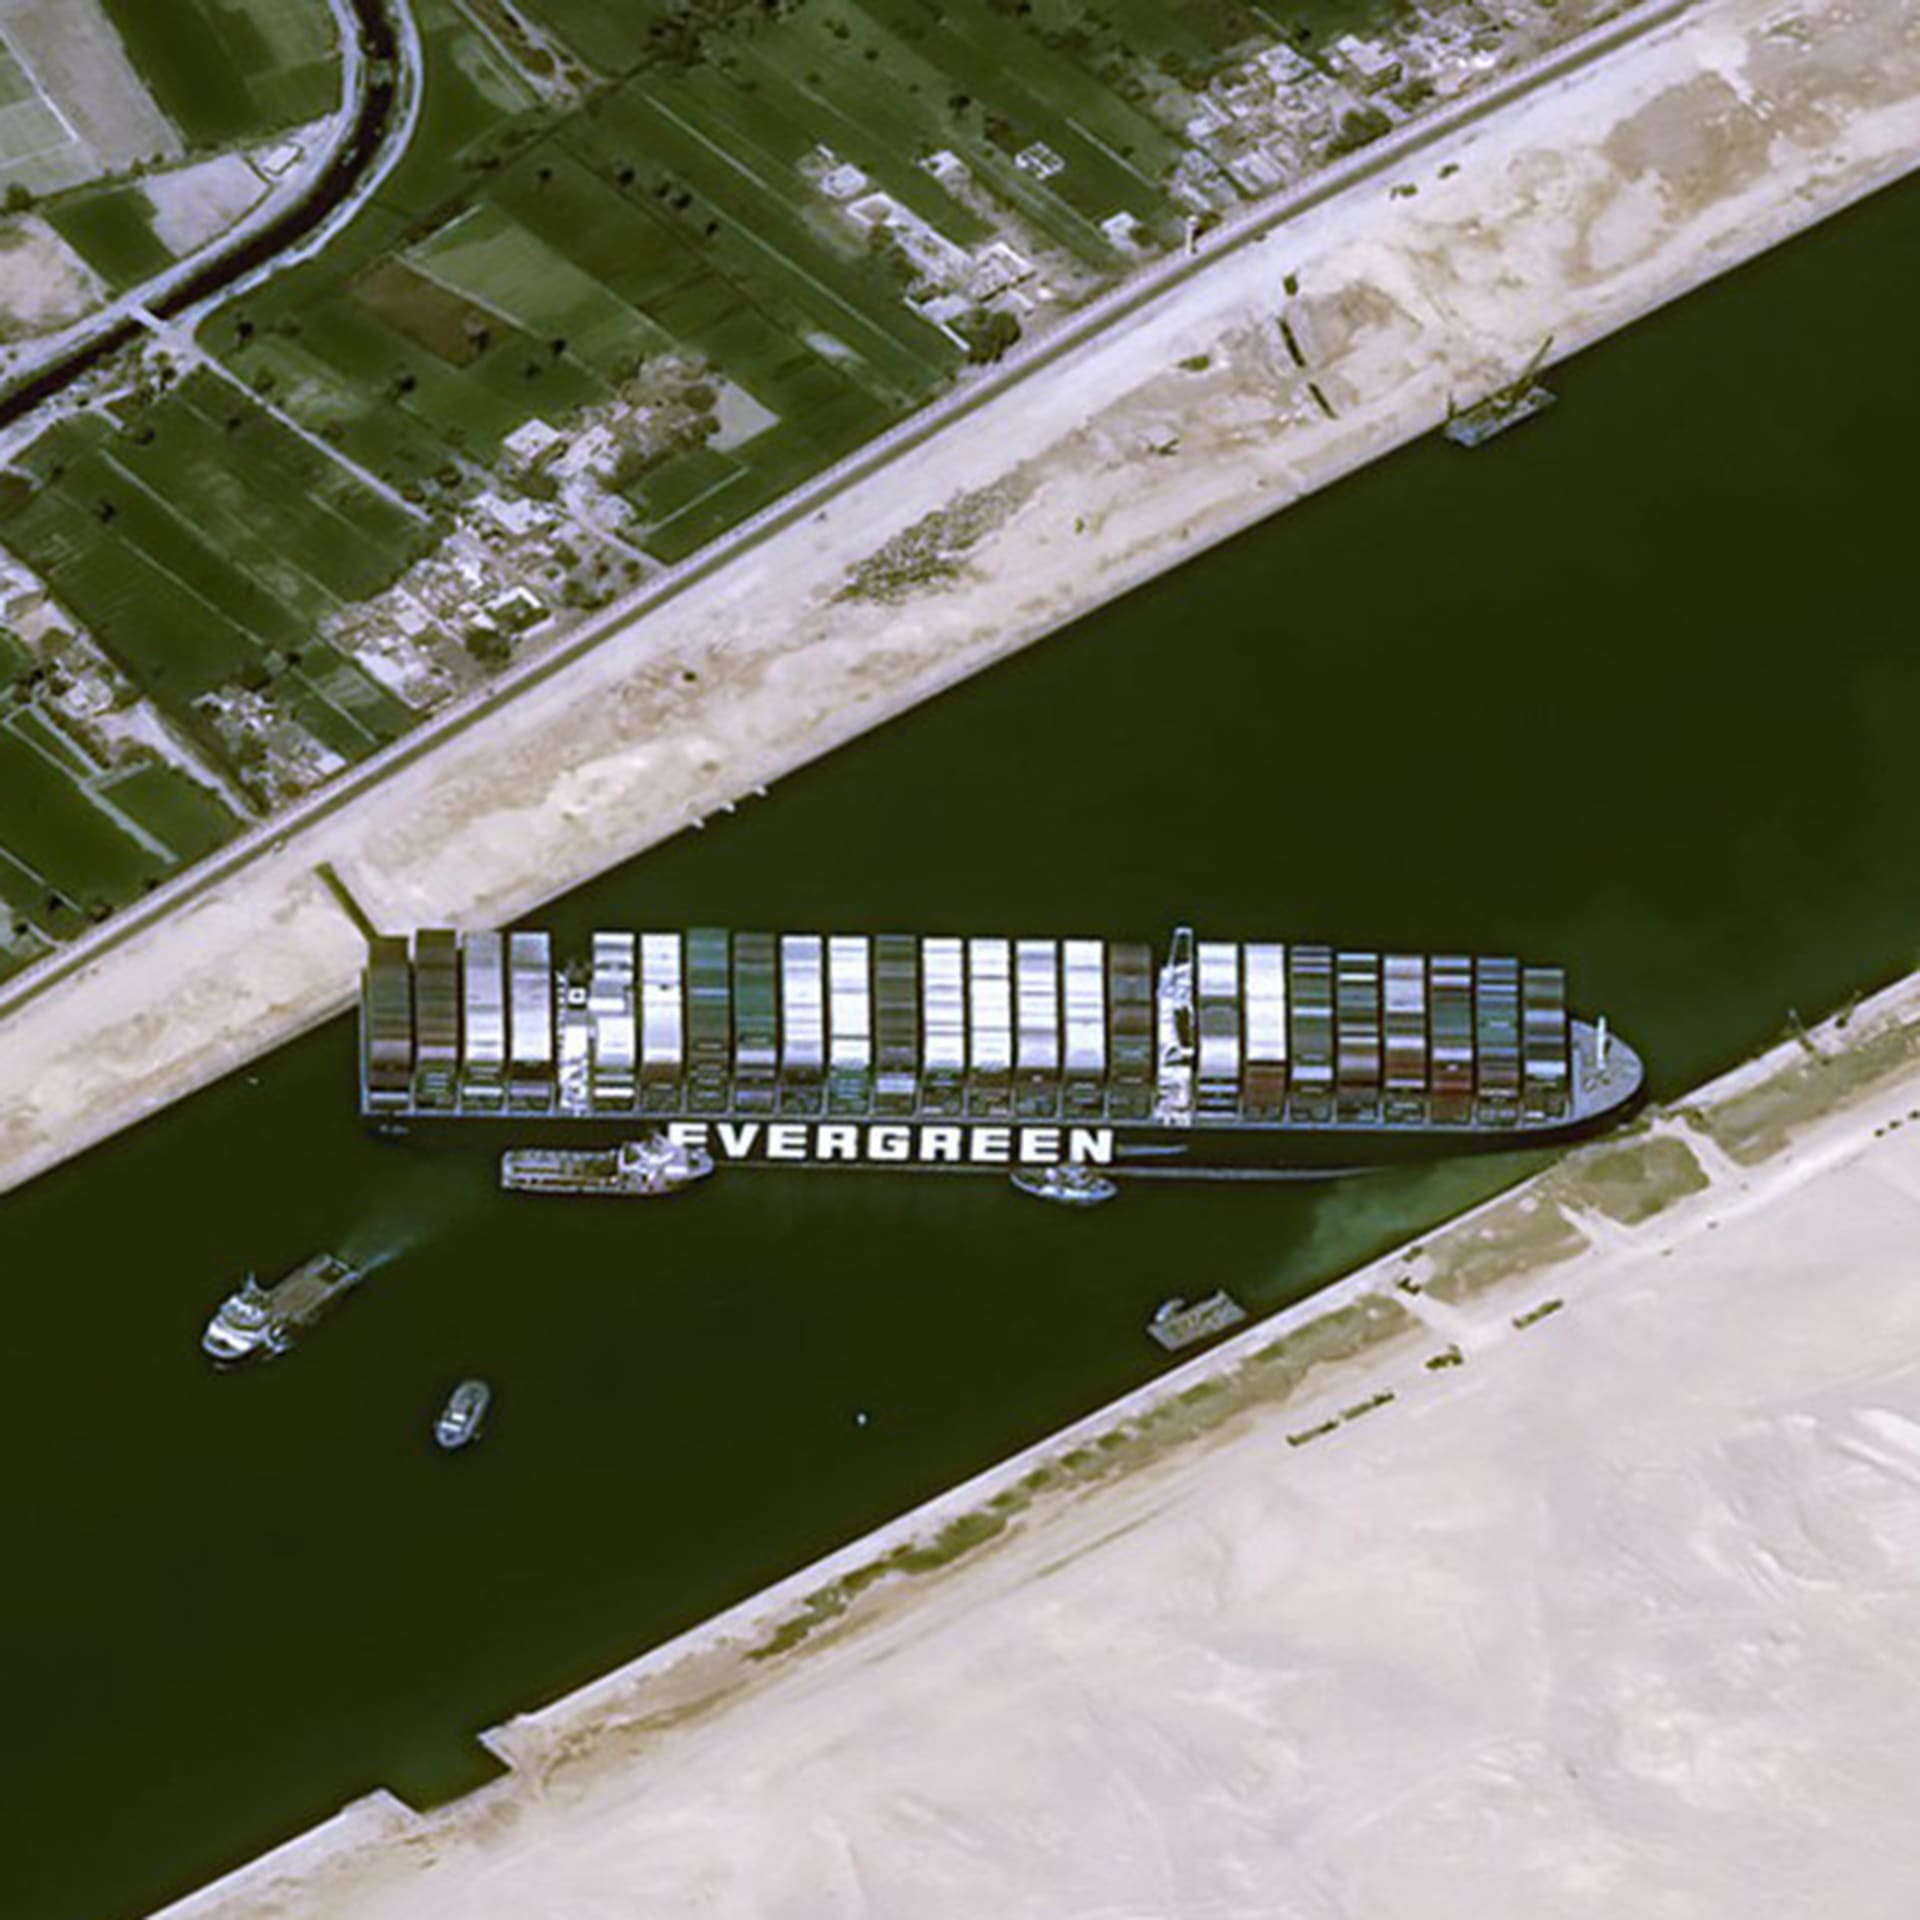 Ve dnech 23. až 29. března ucpala 400 metrů dlouhá a 59 metrů široká kontejnerová loď Ever Given Suezský průplav.